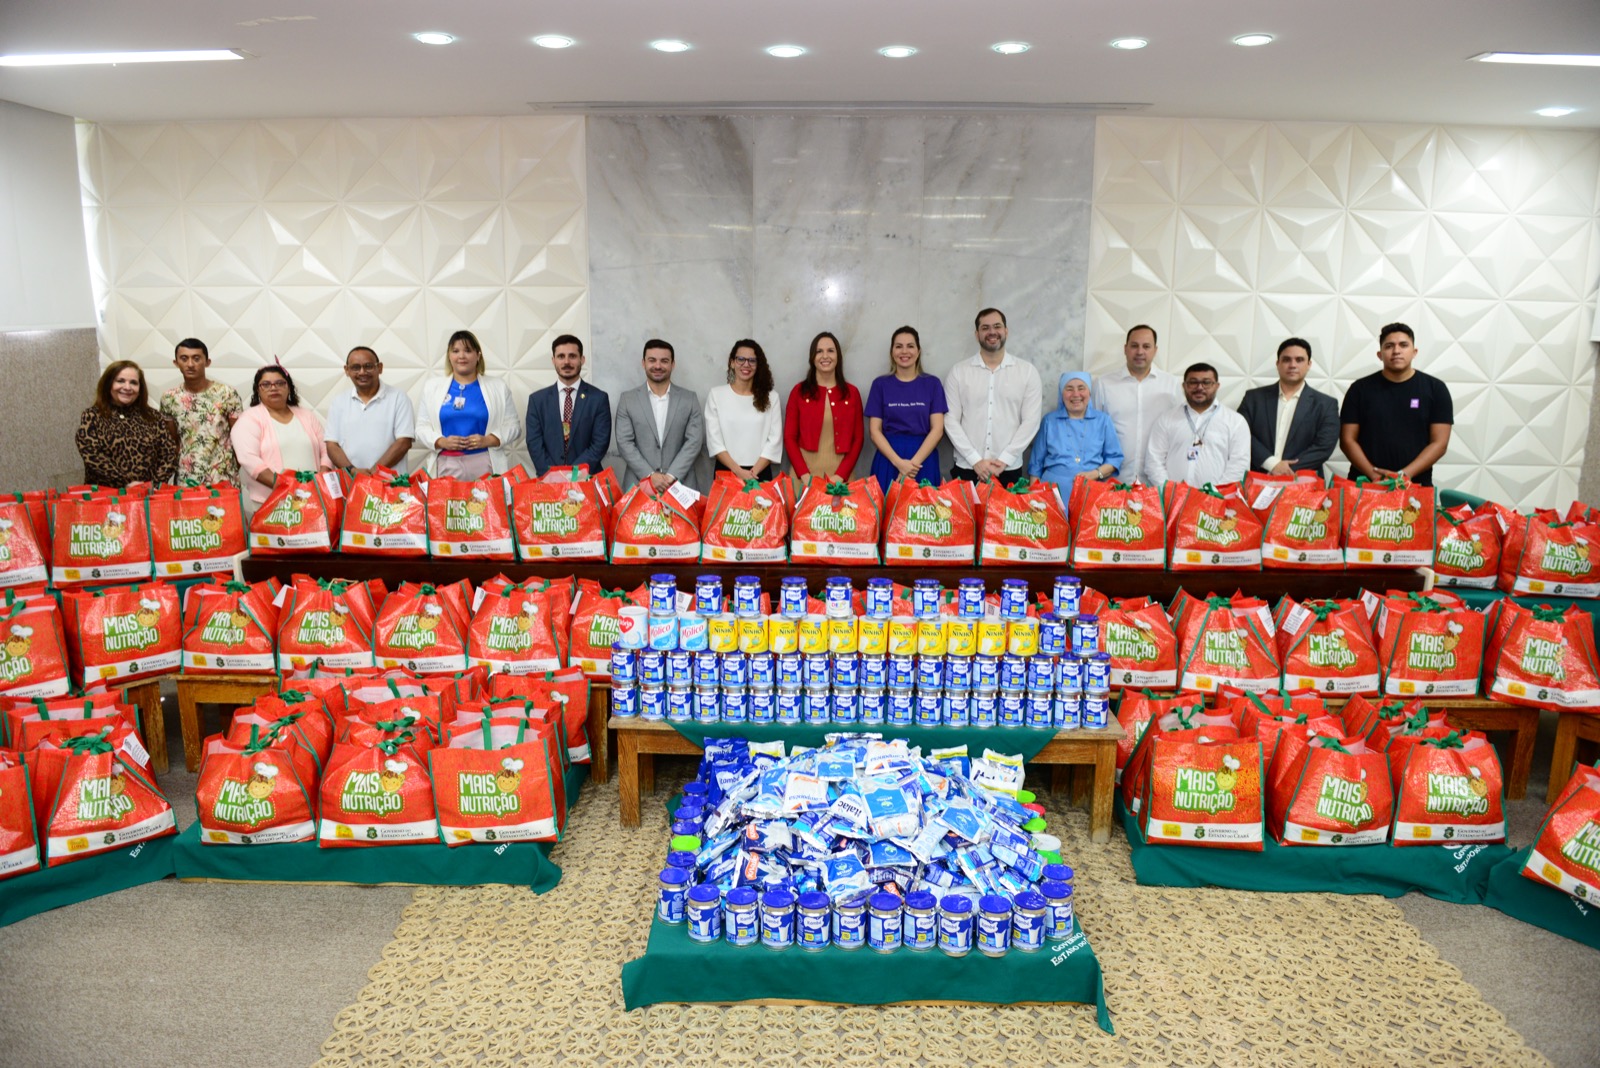 Grupo Super MiniBox arrecada 5 toneladas de alimentos em campanha “Cearense  Solidário'' - Jornal do comércio do ceará